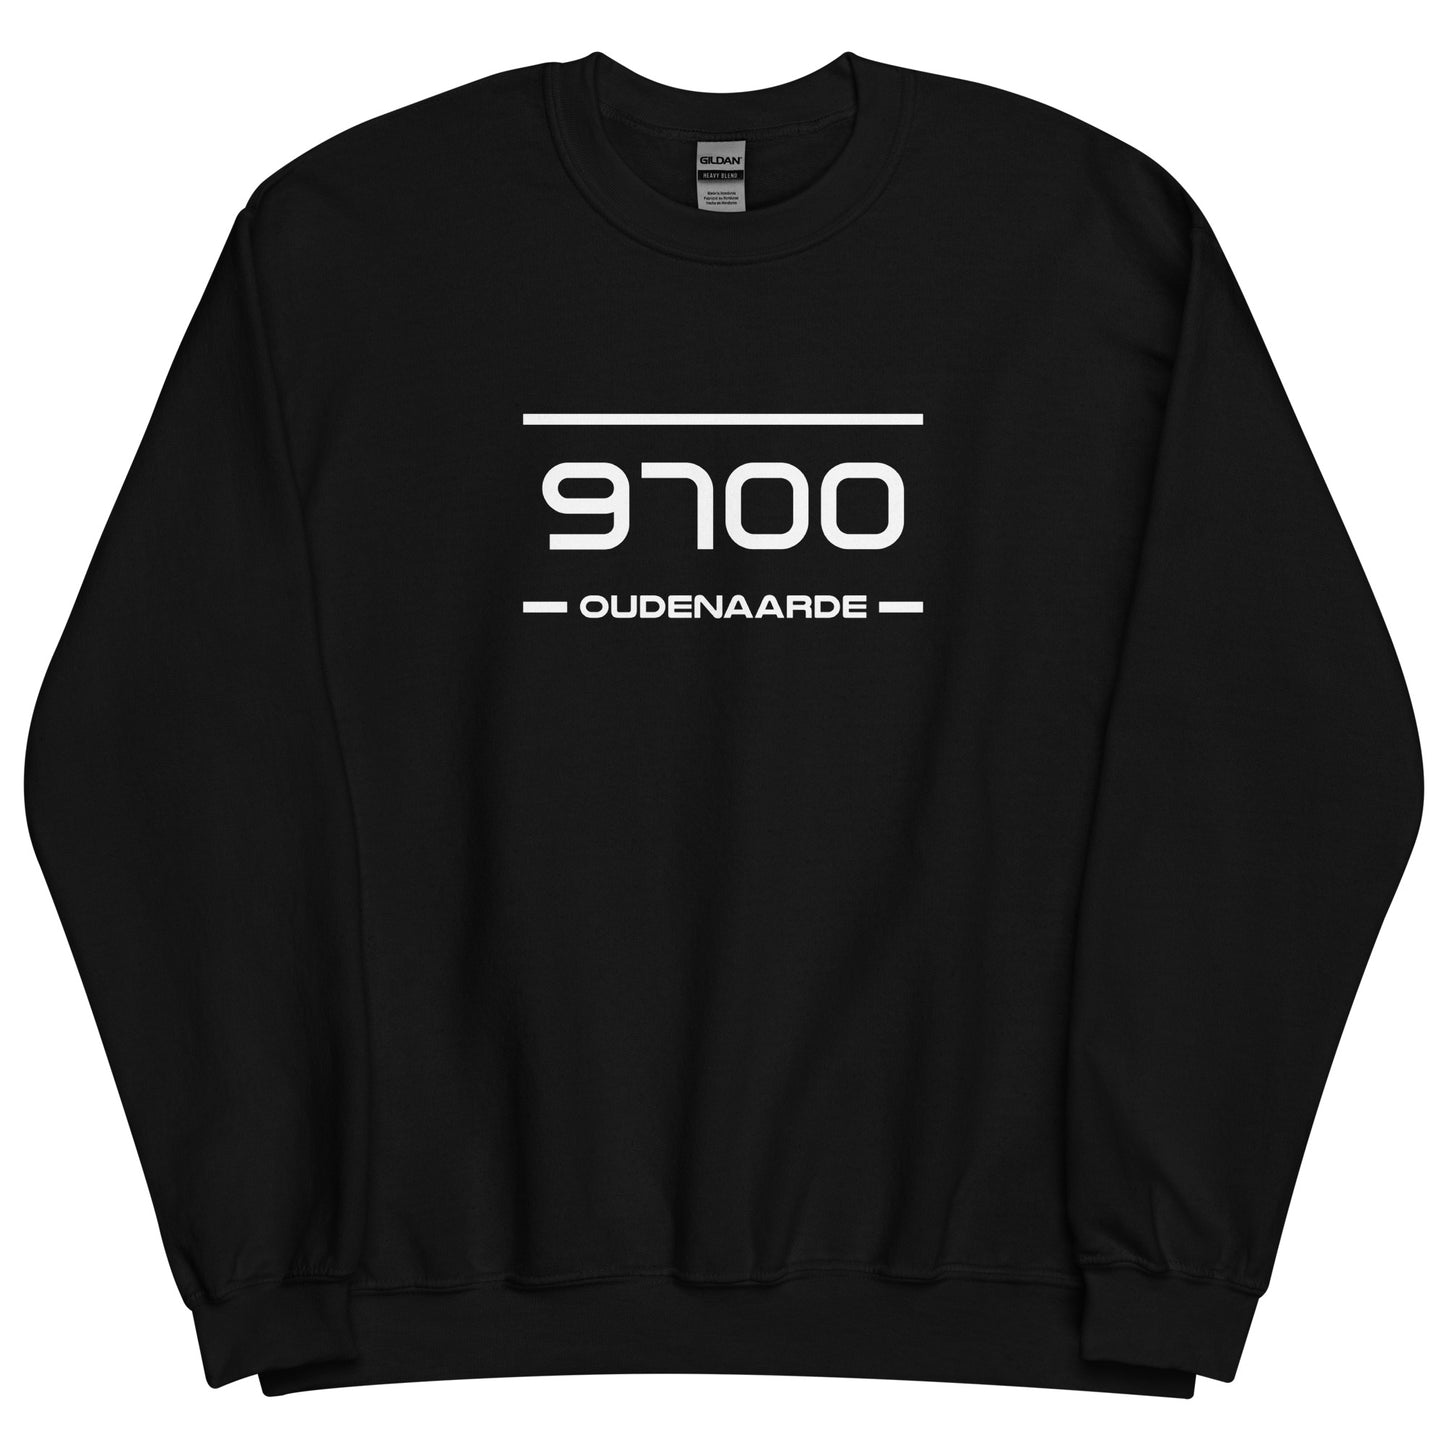 Sweater - 9700 - Oudenaarde (M/V)